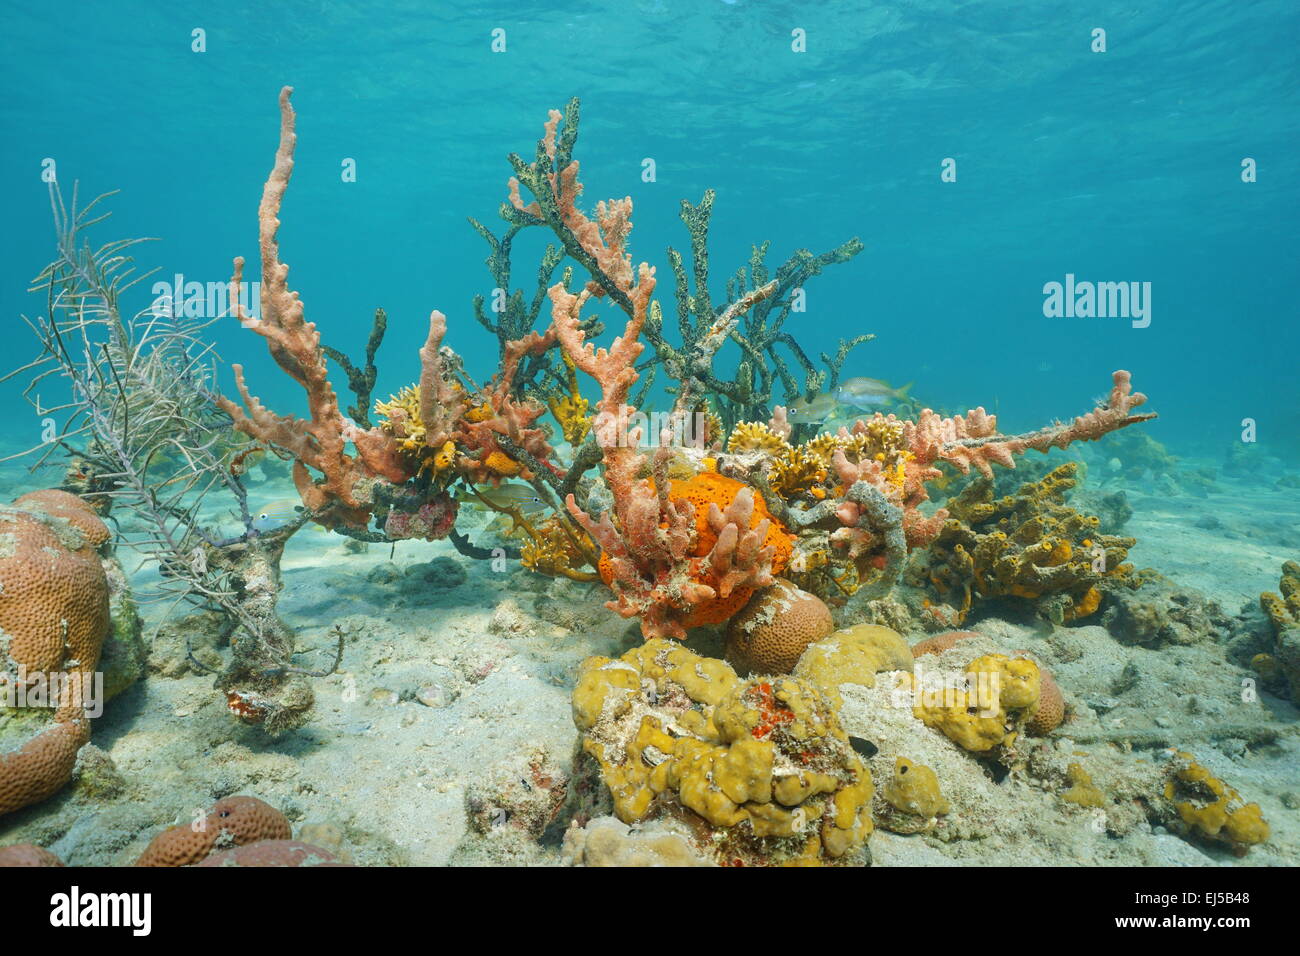 La vie marine colorée sous l'eau avec des éponges embrouillé avec coraux des fonds marins de la mer des Caraïbes Banque D'Images